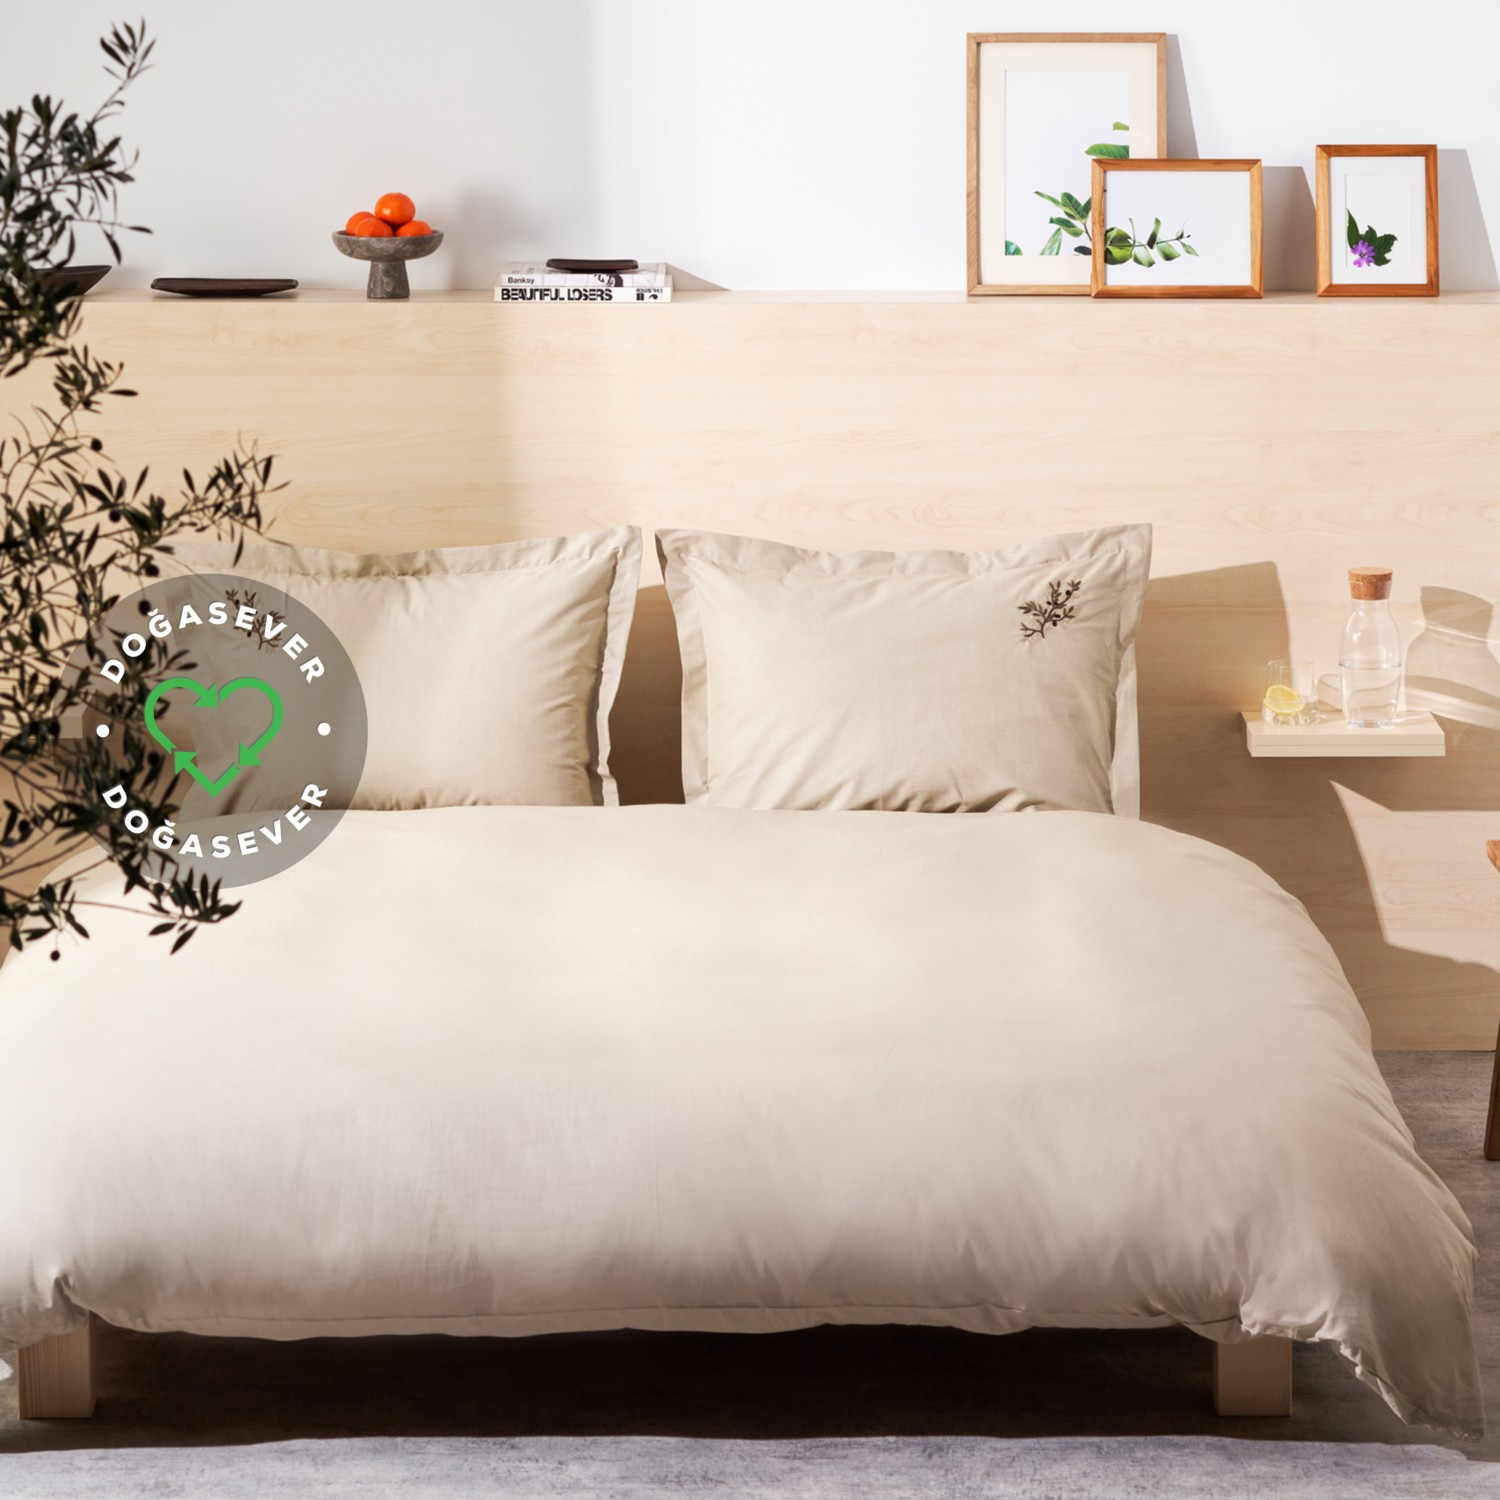 Комплект постельного белья Karaca Home оливкового цвета с вышивкой, двойной цвет хаки